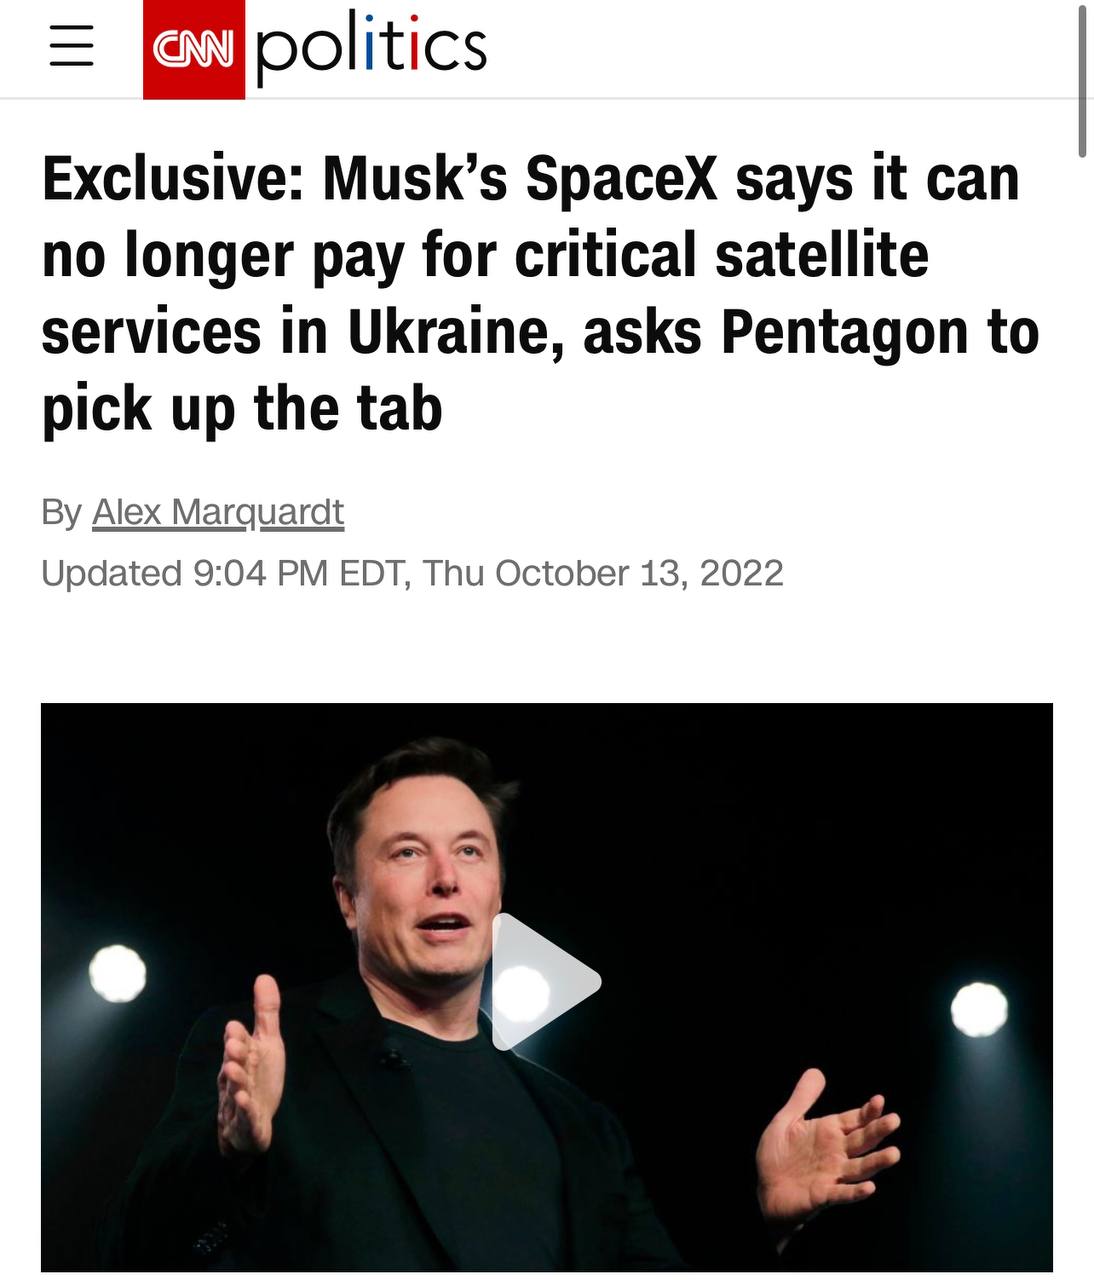 В SpaceX Илона Маска заявили, что больше не смогут финансировать услуги Starlink в Украине - CNN 